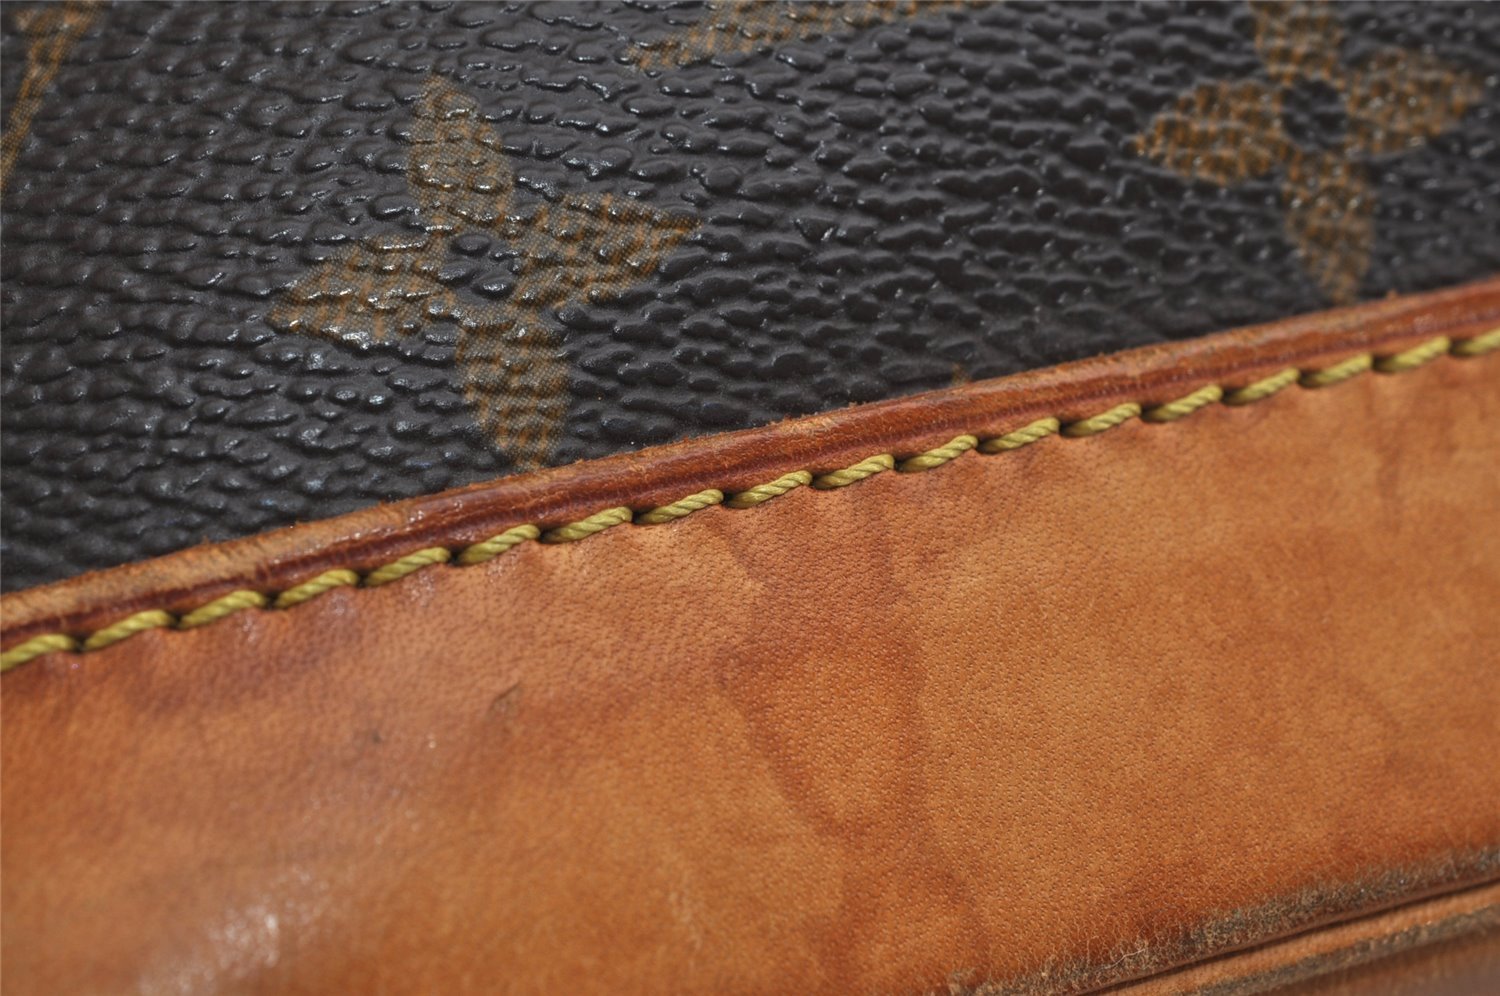 Authentic Louis Vuitton Monogram Alma Hand Bag Purse M51130 LV 0602K